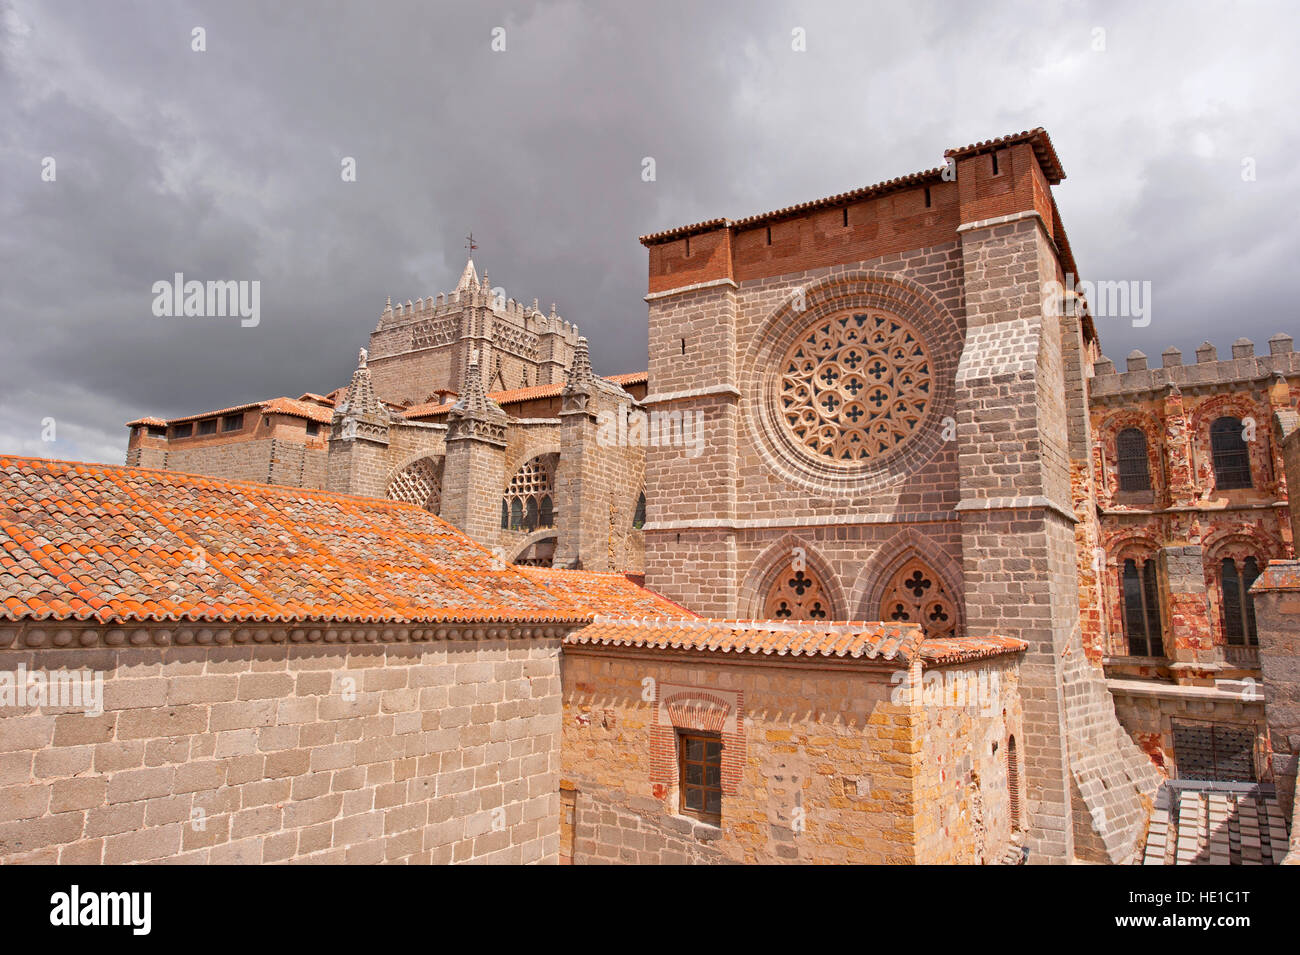 Die Kathedrale Fenster betrachtet von der Stadtmauer in Avila, Spanien Stockfoto